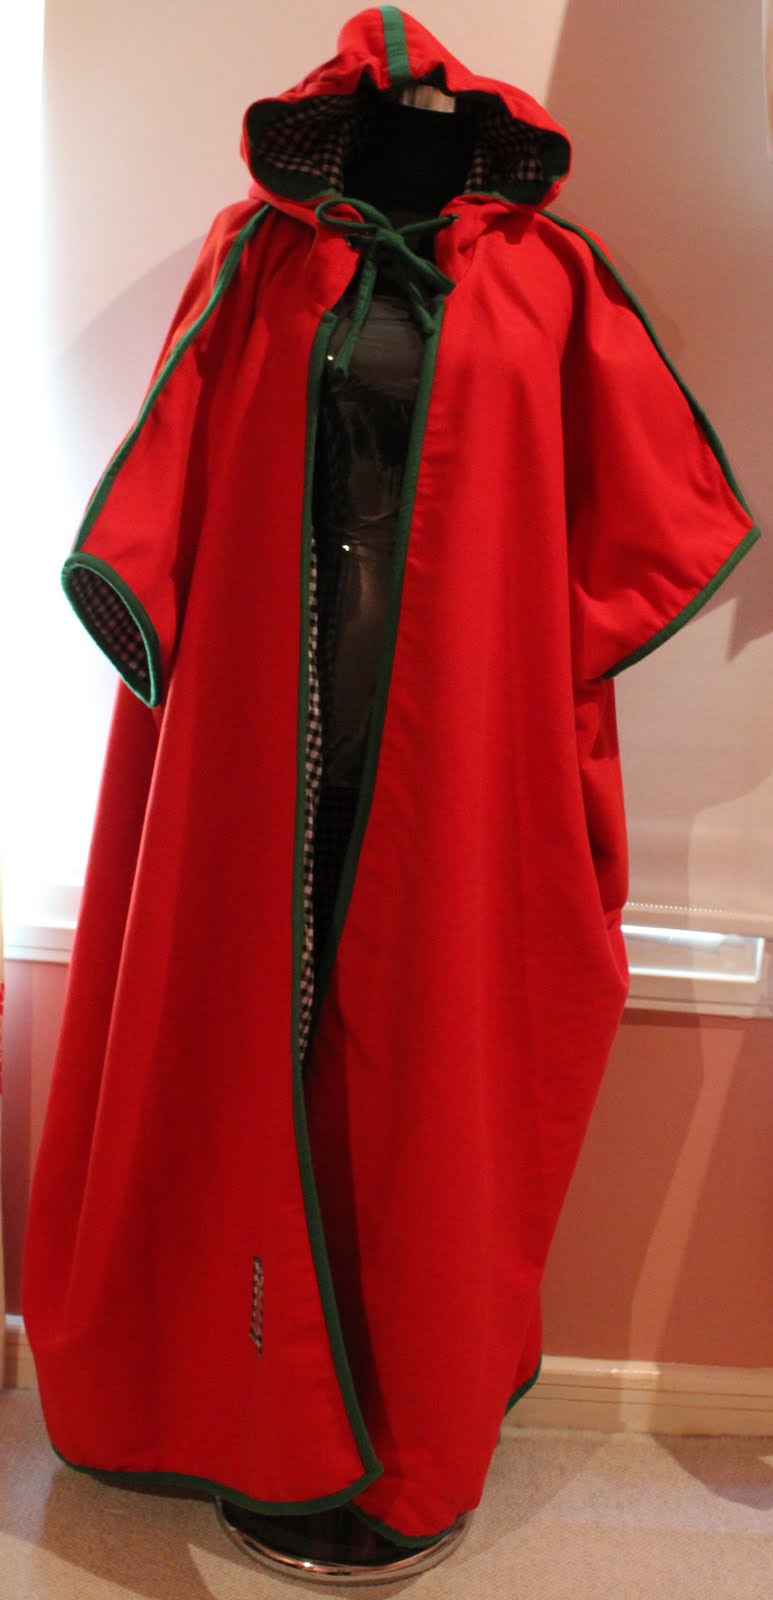 clothing of kuwait